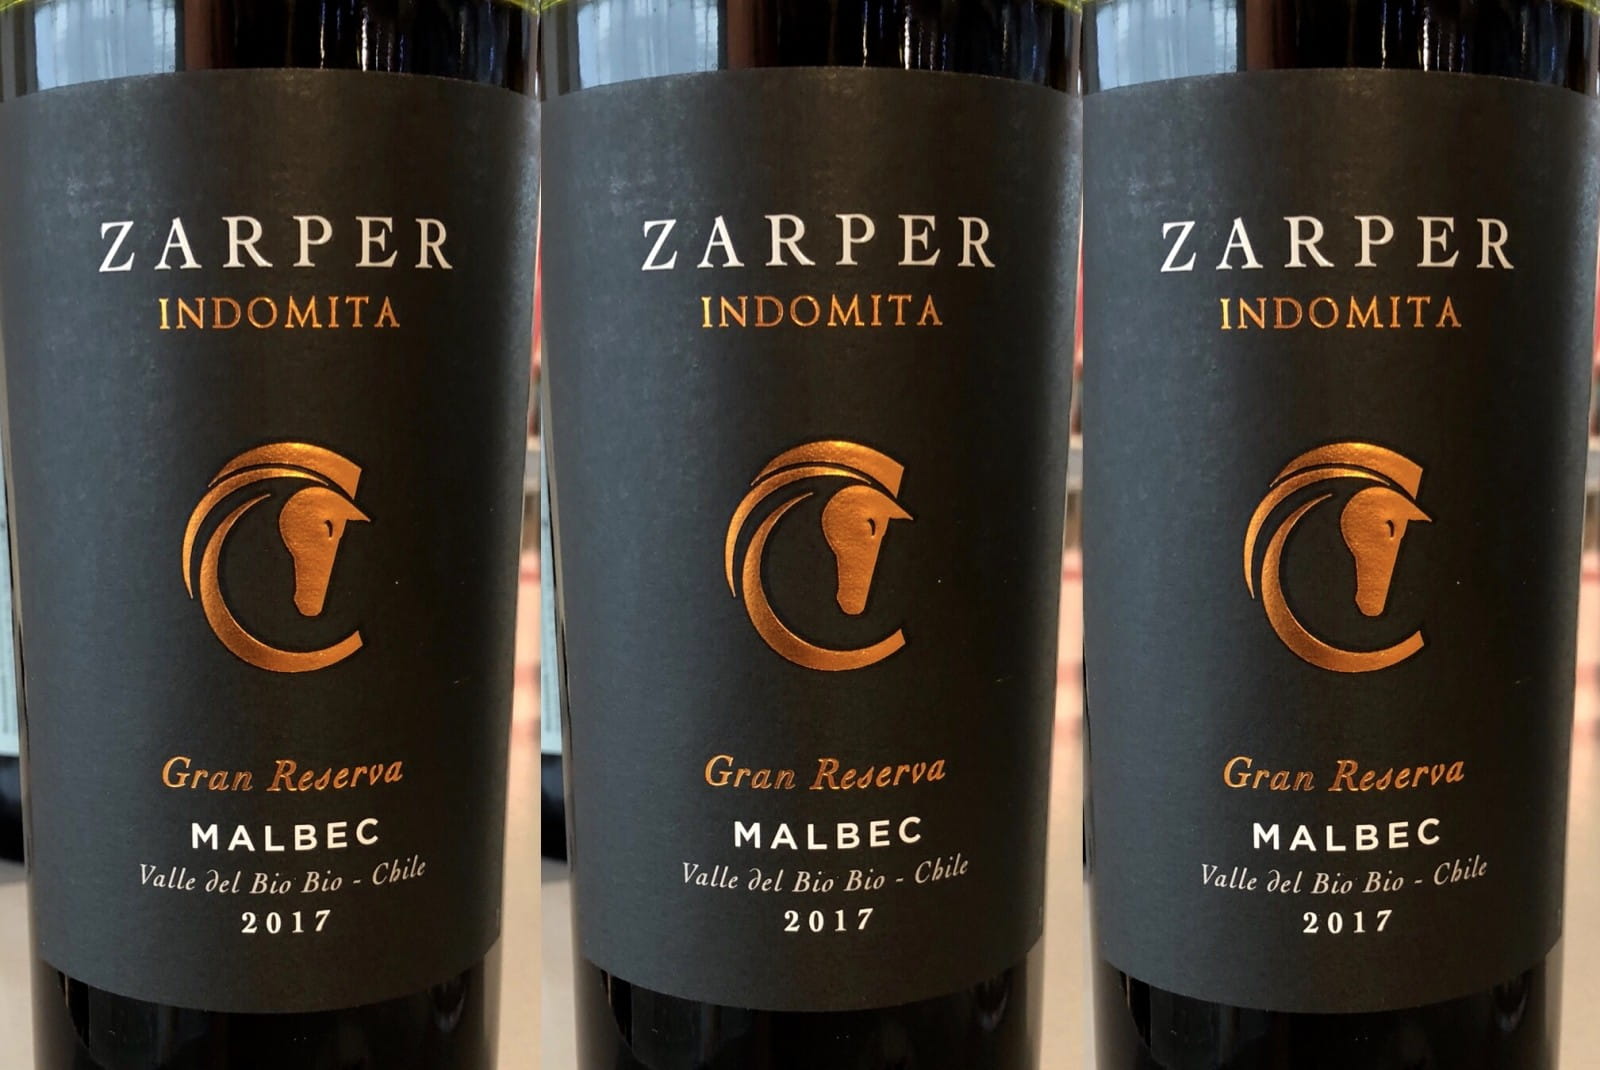 Wine of the week: Zarper malbec